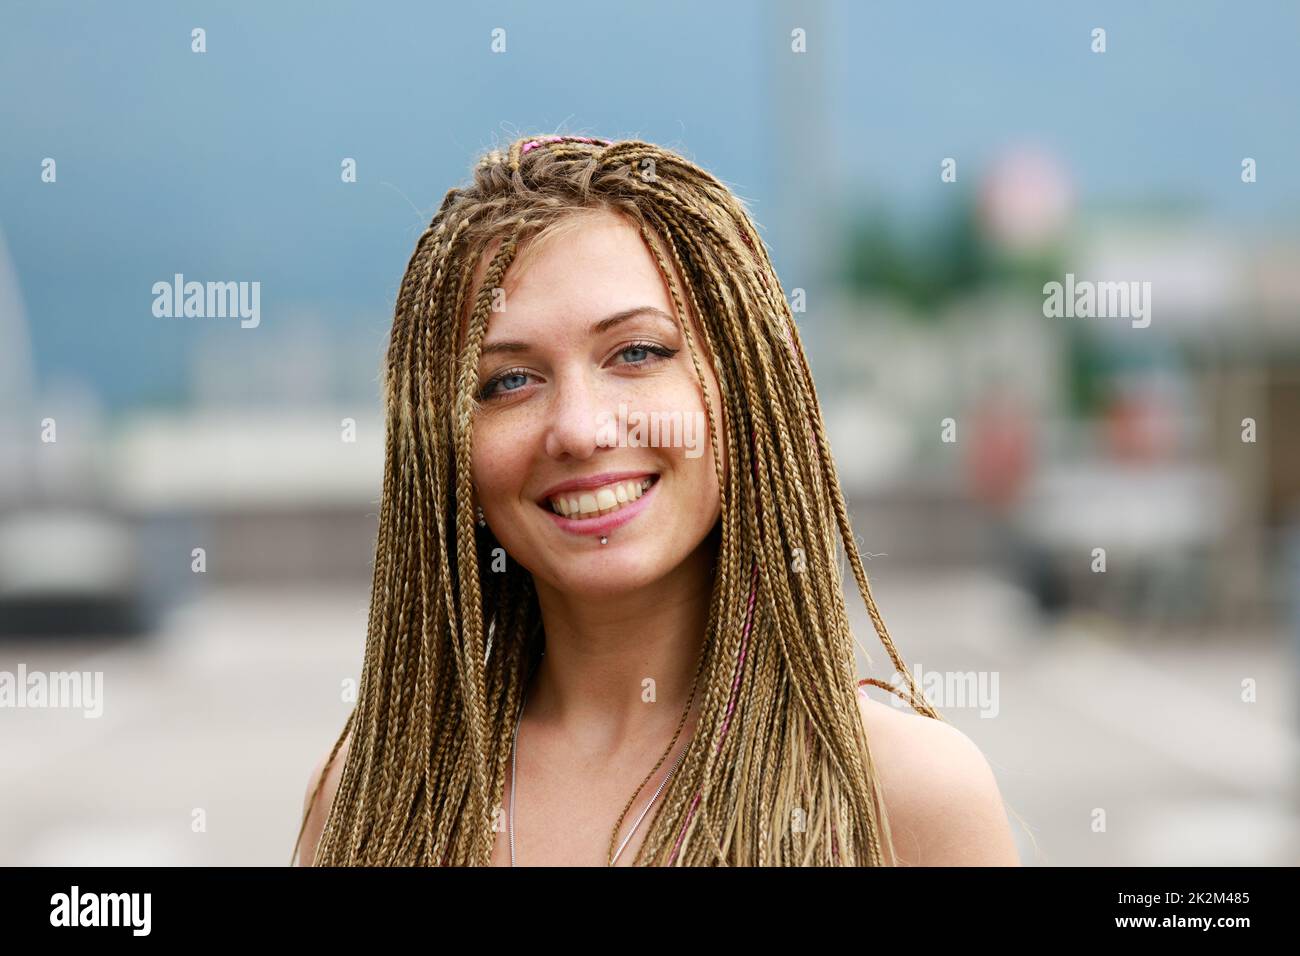 mujer sonriente en peinado trenzado al aire libre Foto de stock